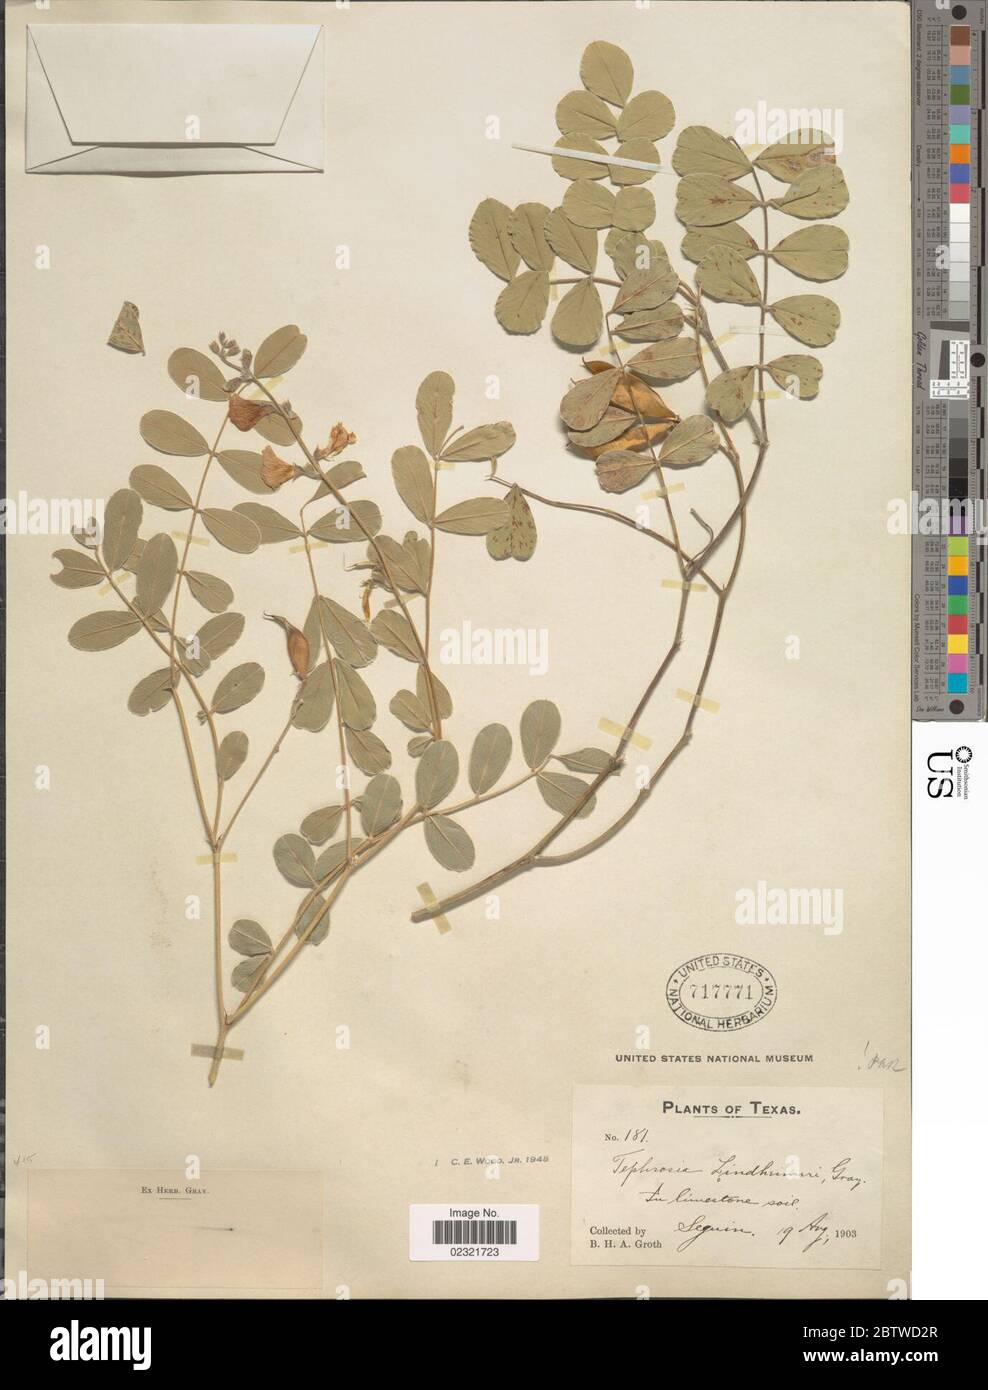 Tephrosia lindheimeri A Gray. Stock Photo